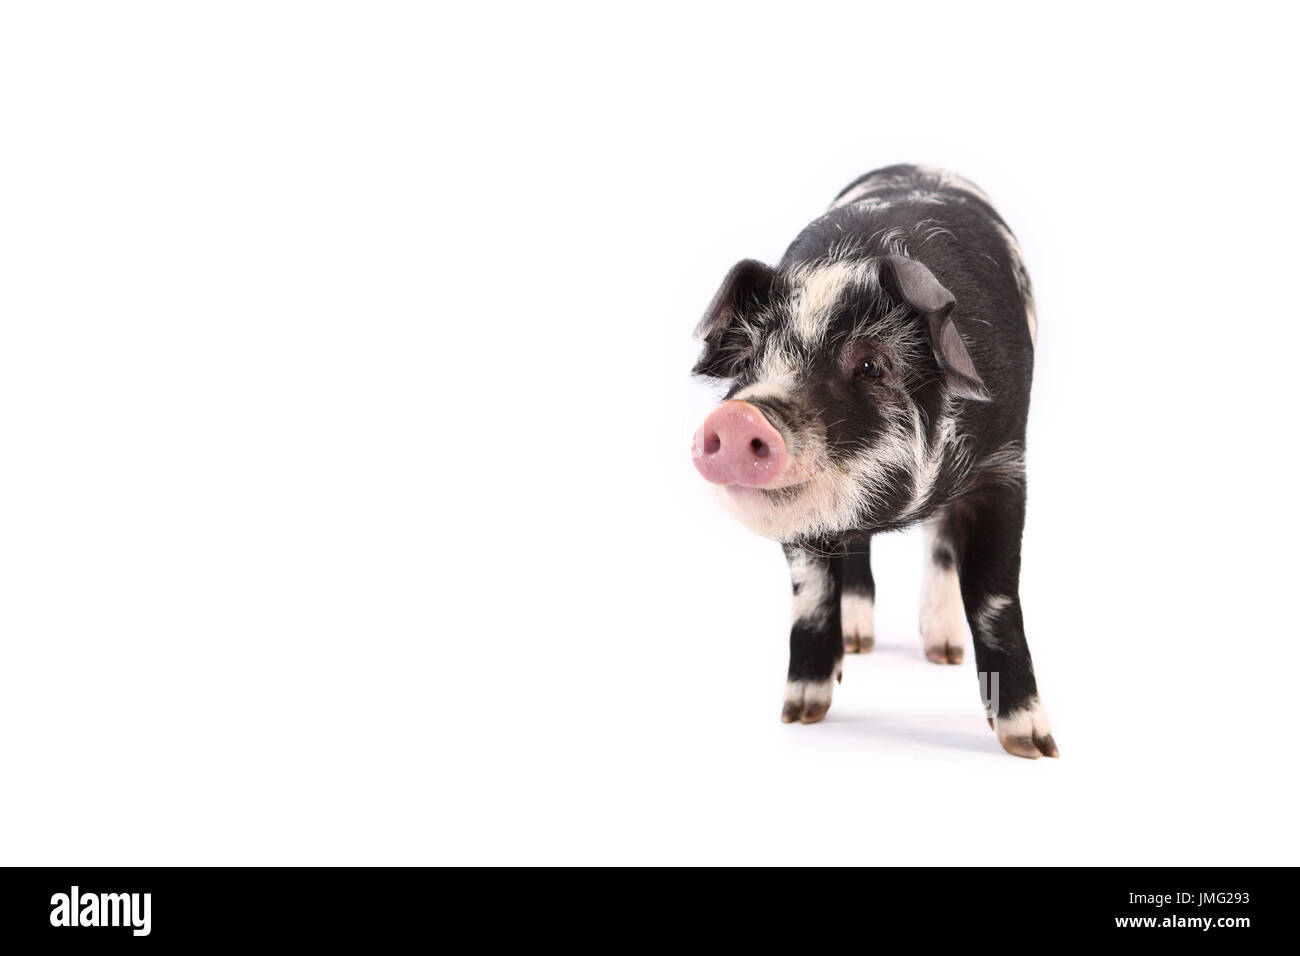 Turopolje Schweine. Ferkel stehend. Studio Bild vor einem weißen Hintergrund. Deutschland Stockfoto